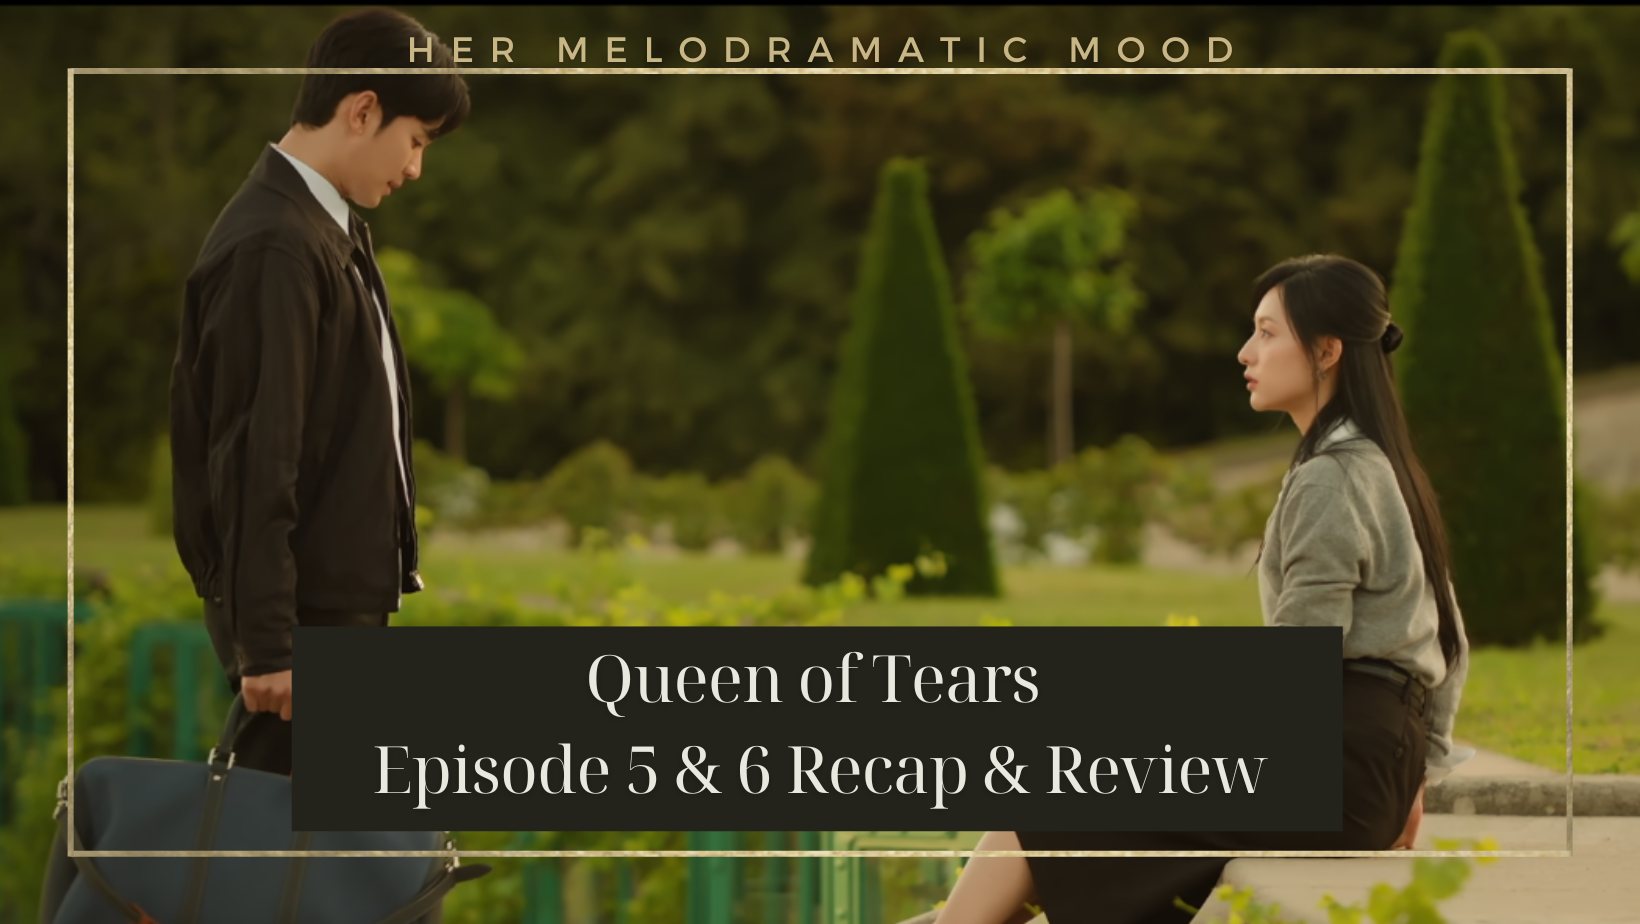 Queen of Tears Episode 5 & 6 Recap & Review